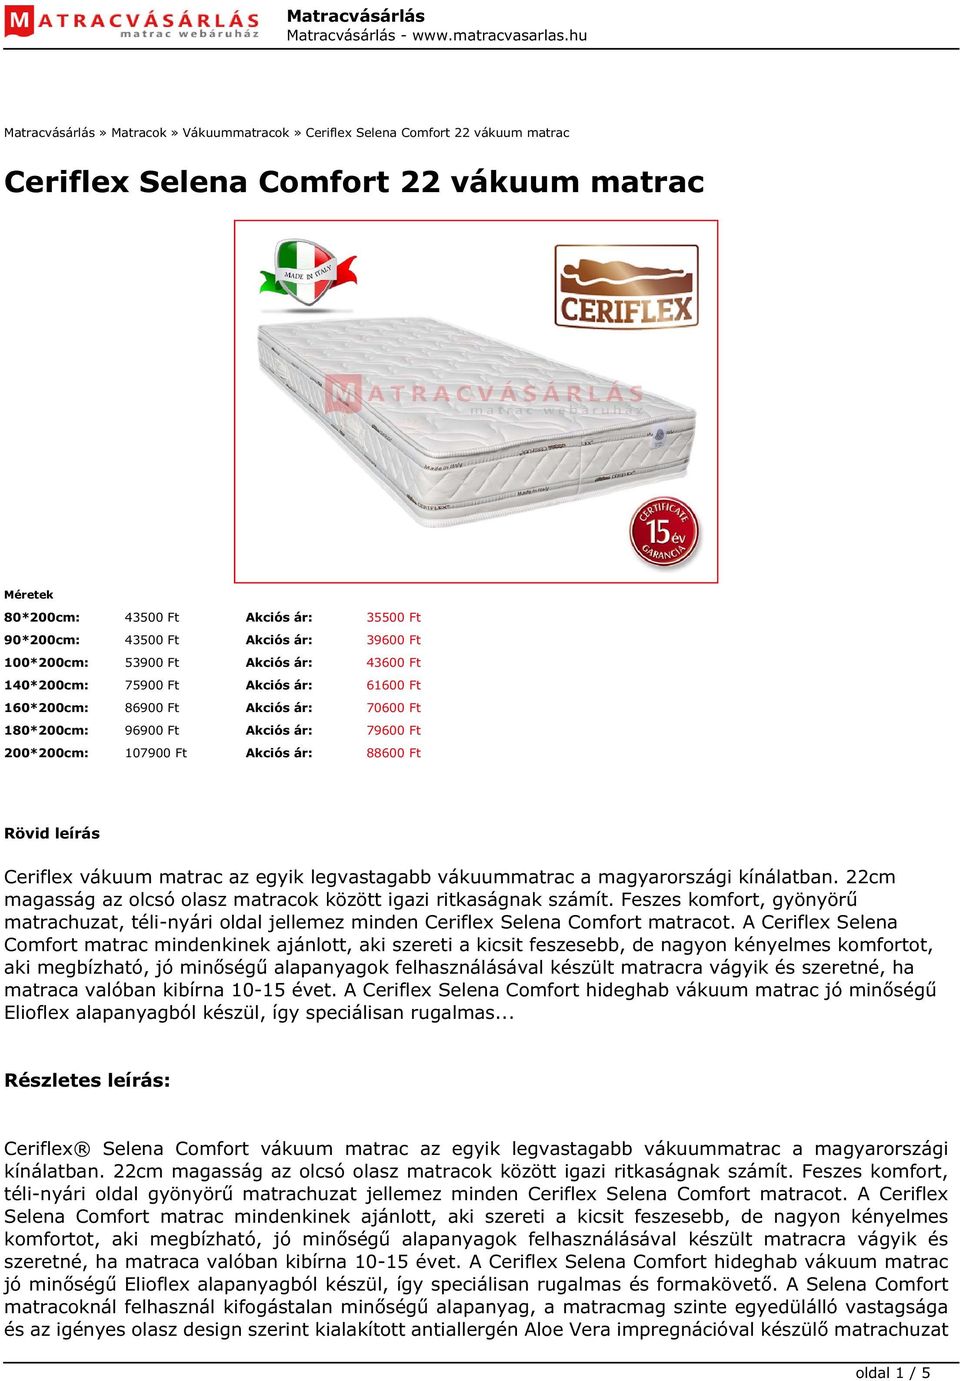 Akciós ár: 88600 Ft Rövid leírás Ceriflex vákuum matrac az egyik legvastagabb vákuummatrac a magyarországi kínálatban. 22cm magasság az olcsó olasz matracok között igazi ritkaságnak számít.